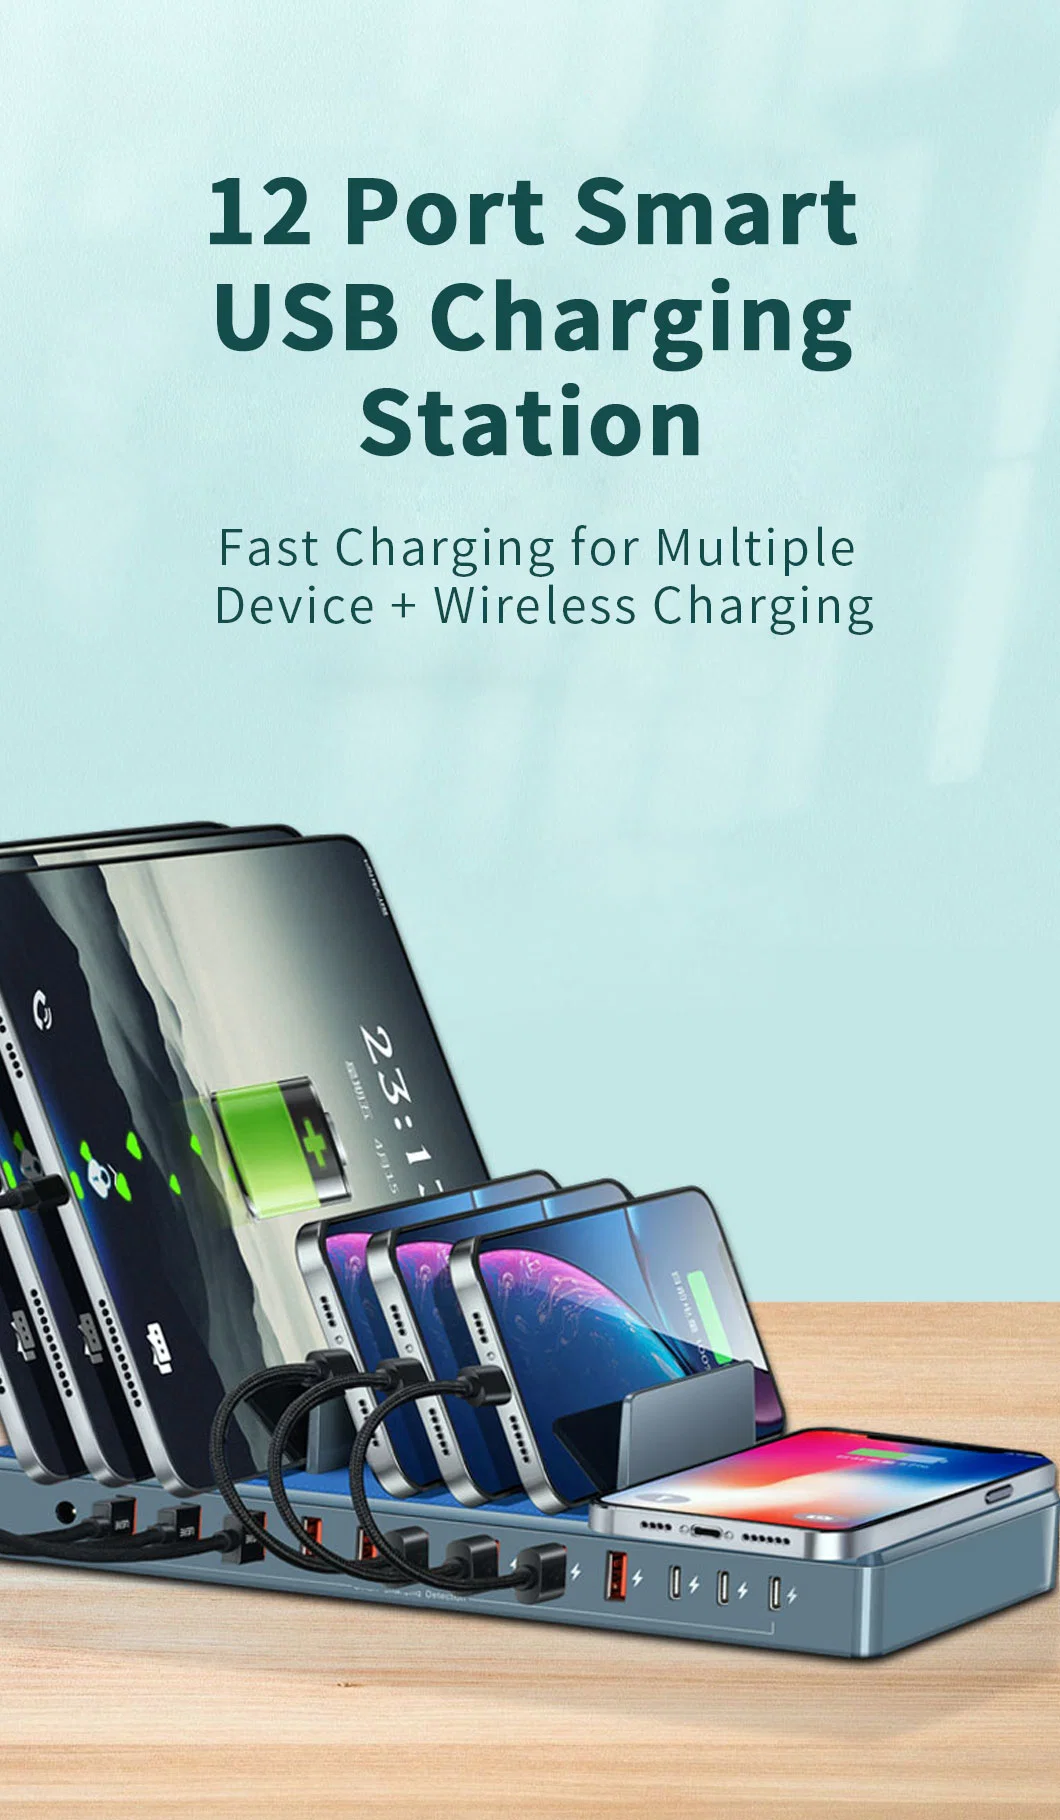 12 Port Smart USB Charging Station Multiport USB Charger